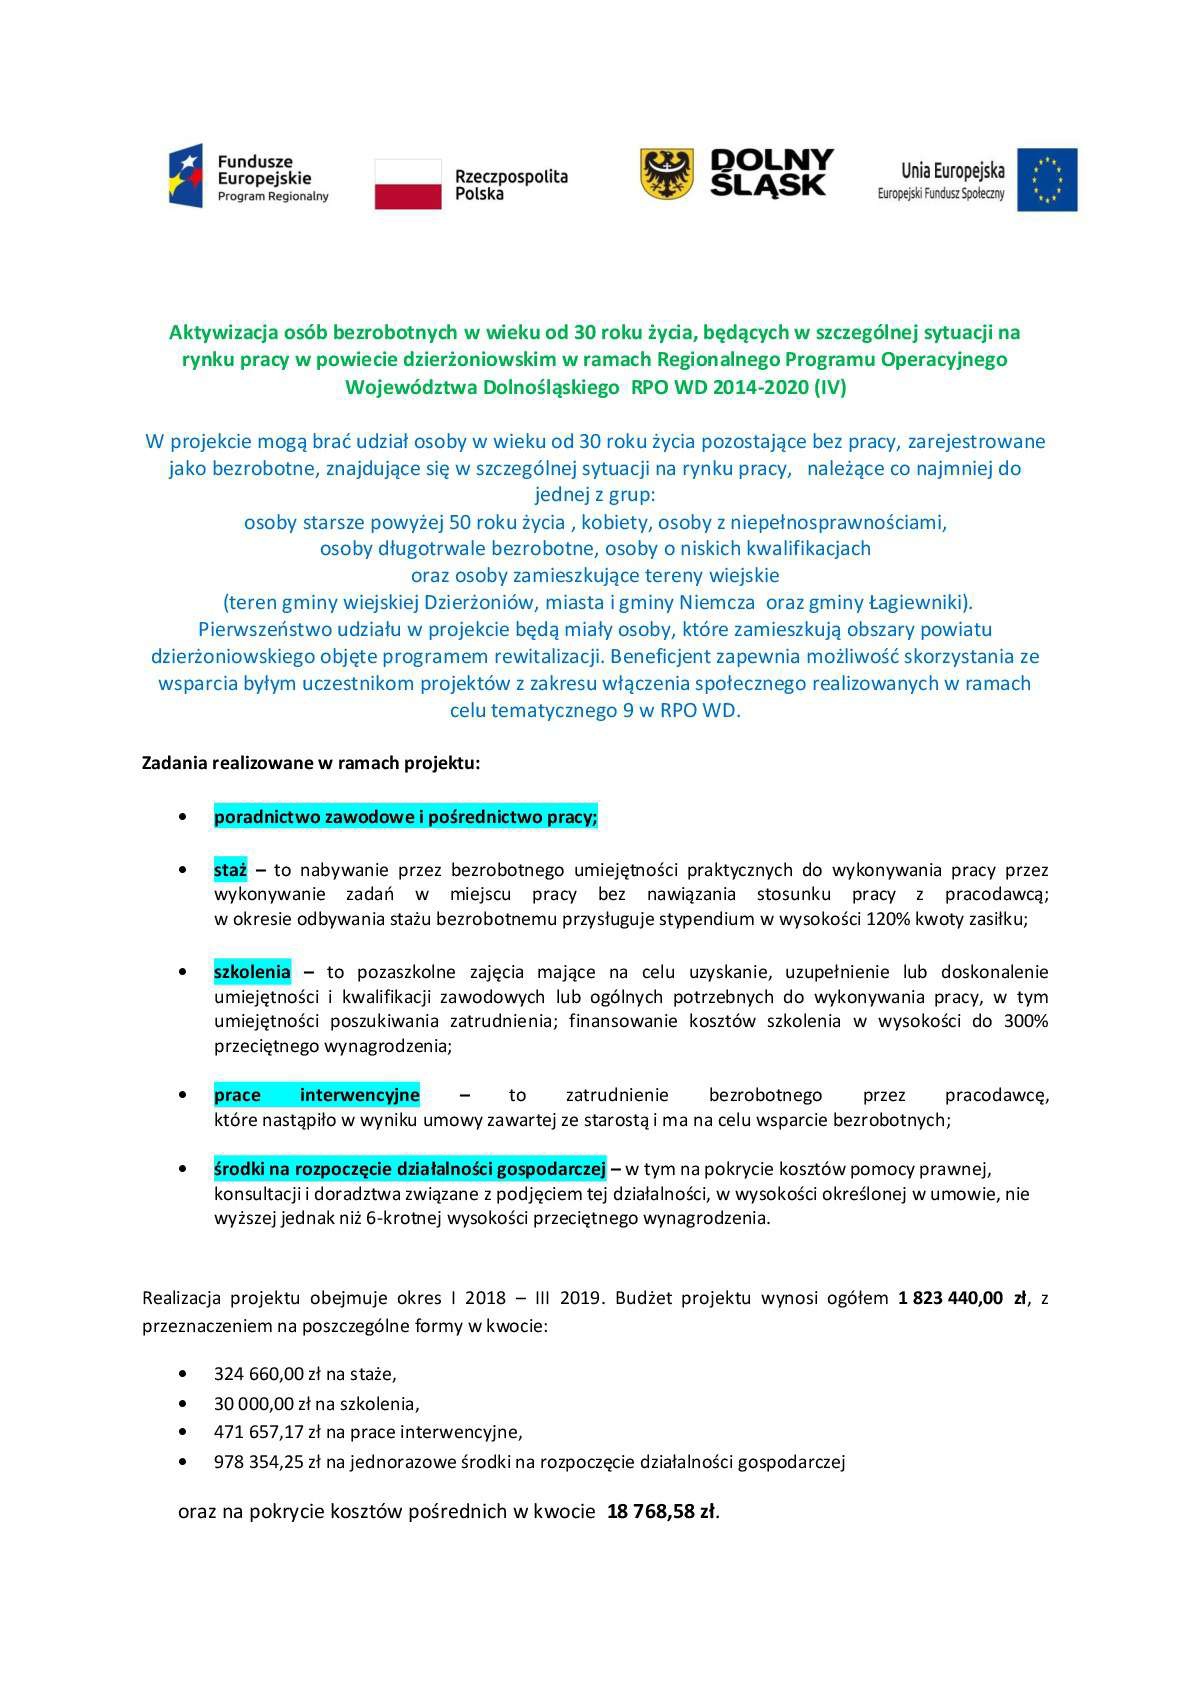 Obrazek dla: Aktywizacja osób bezrobotnych w wieku od 30 roku życia będących w szczególnej sytuacji na rynku pracy w powiecie dzierżoniowskim w ramach Regionalnego Projektu Operacyjnego Województwa Dolnośląskiego RPO WD 2014-2020 (IV)